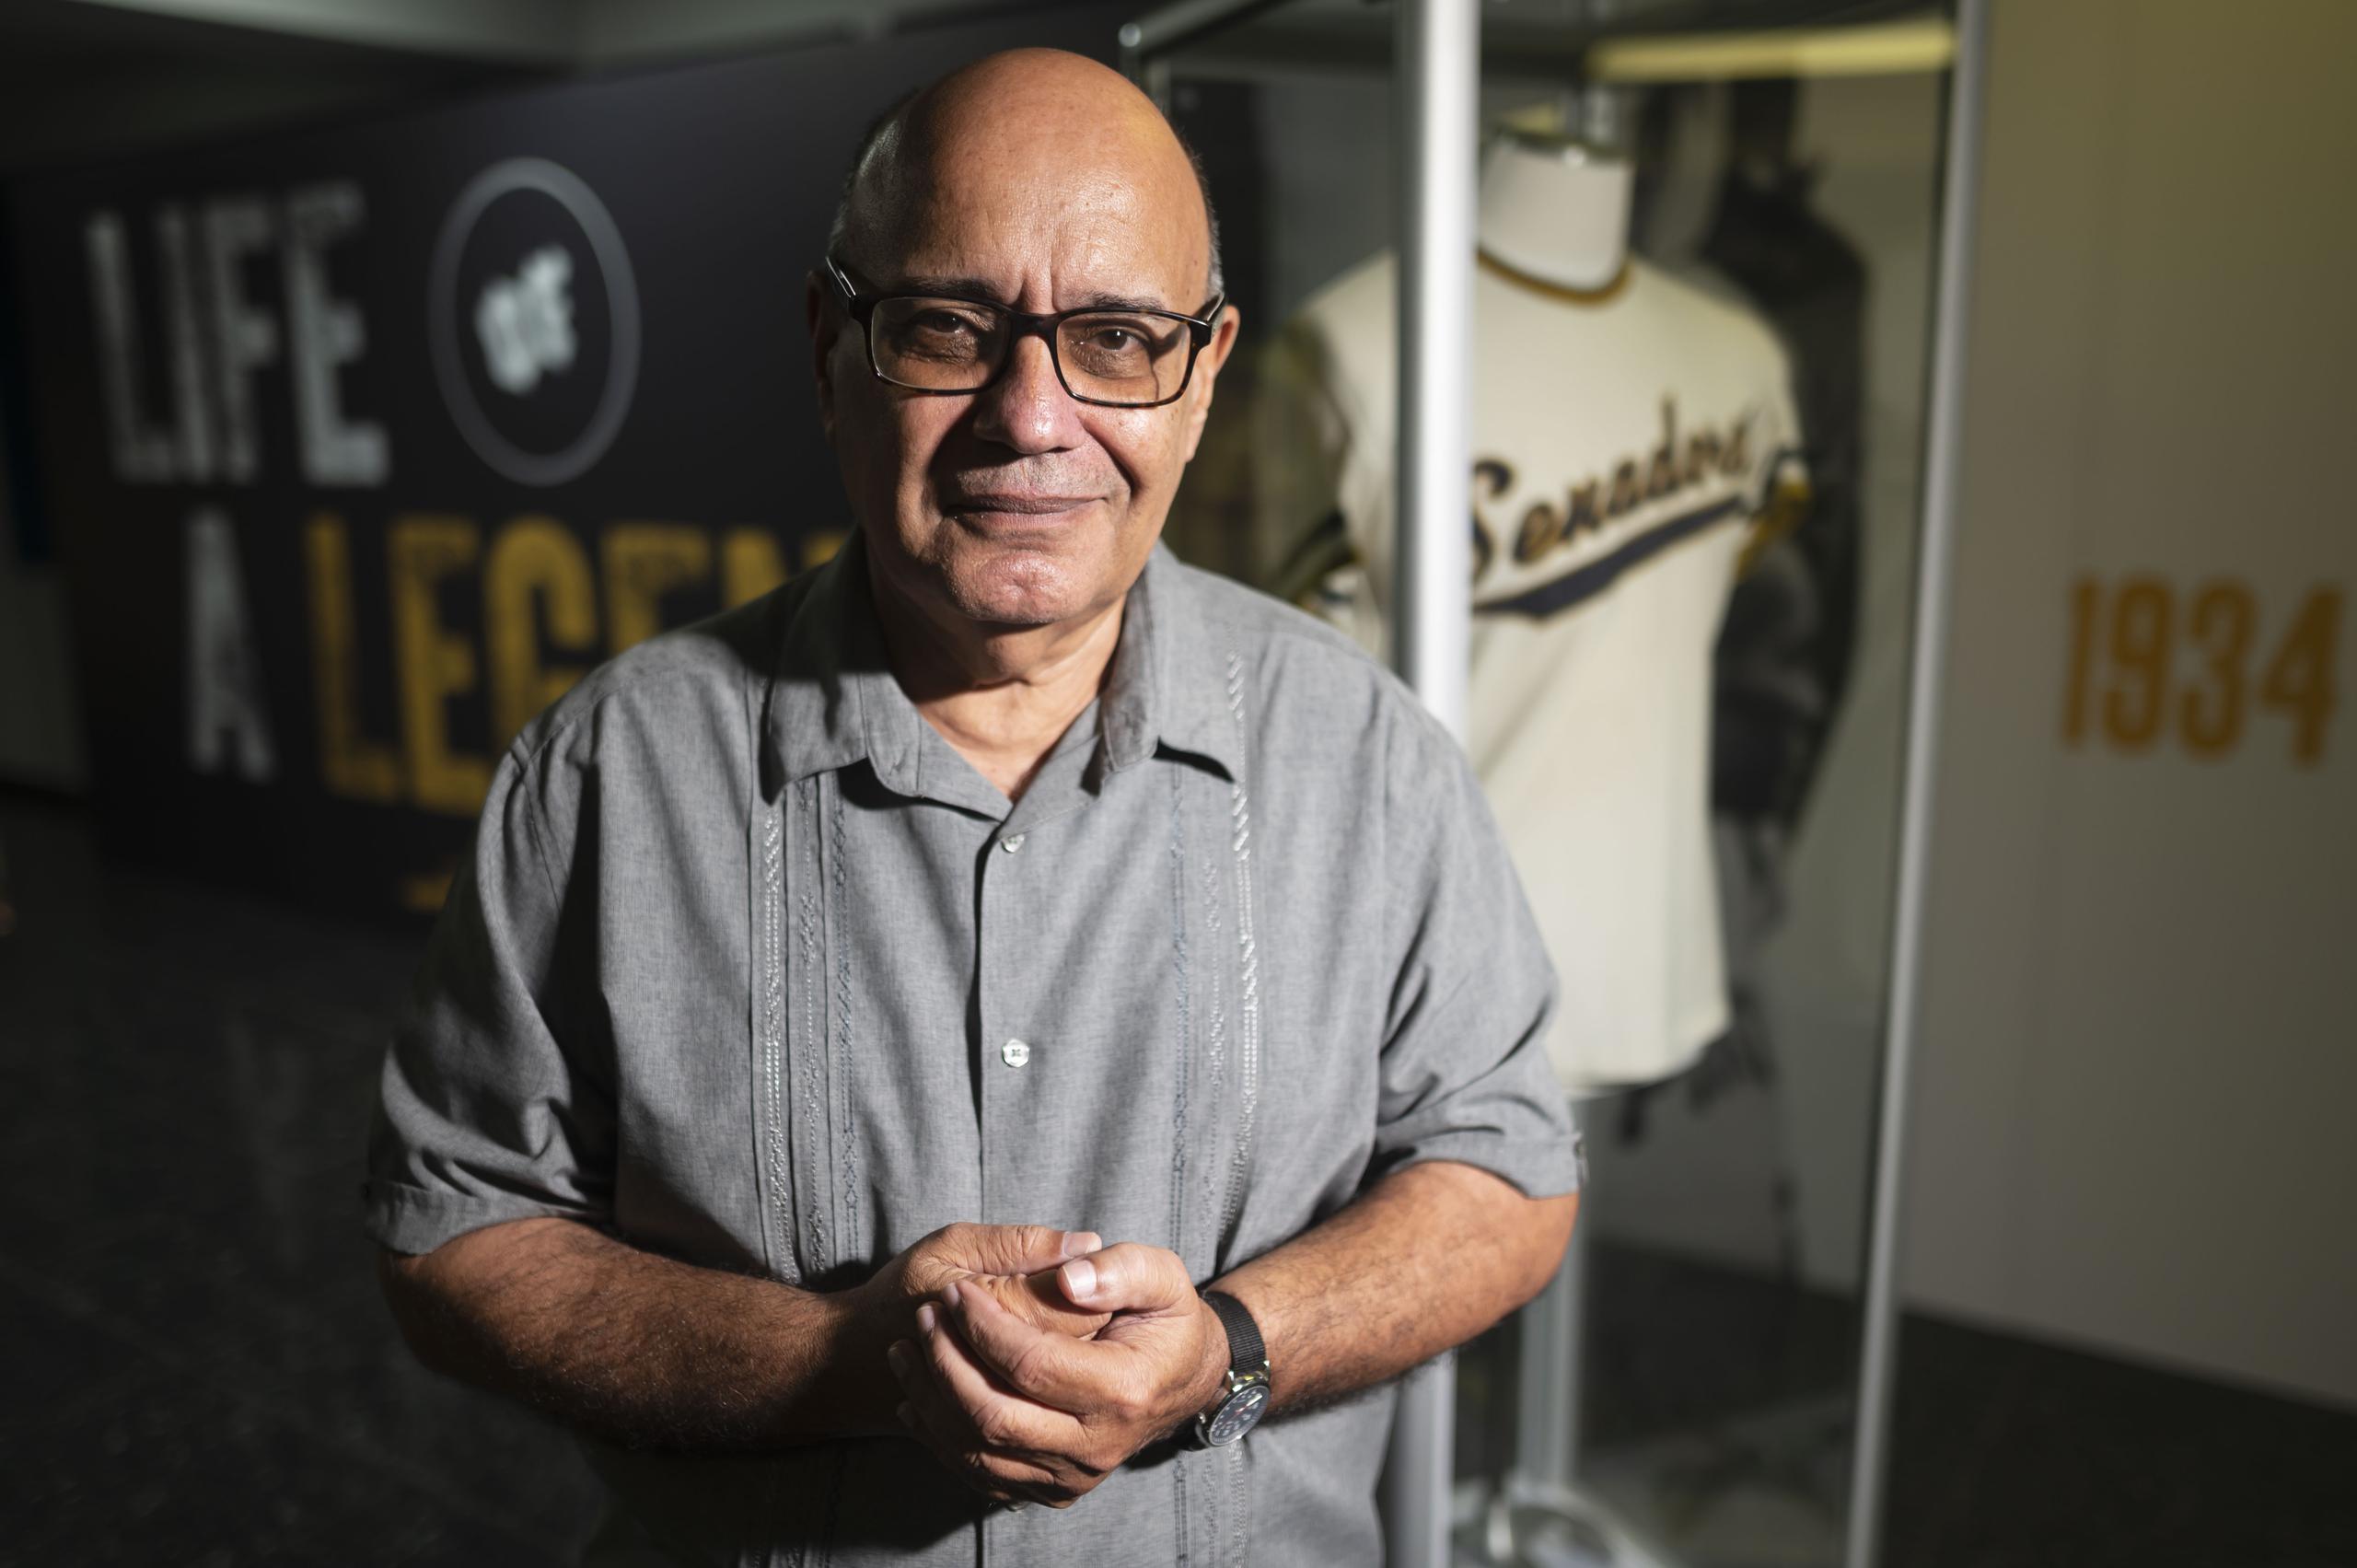 El historiador Jorge Colón Delgado precisa que la narración de Felo Ramírez conocida popularmente como la del juego en el que Roberto Clemente conectó su hit 3,000 fue posiblemente una recreación del gran hit.